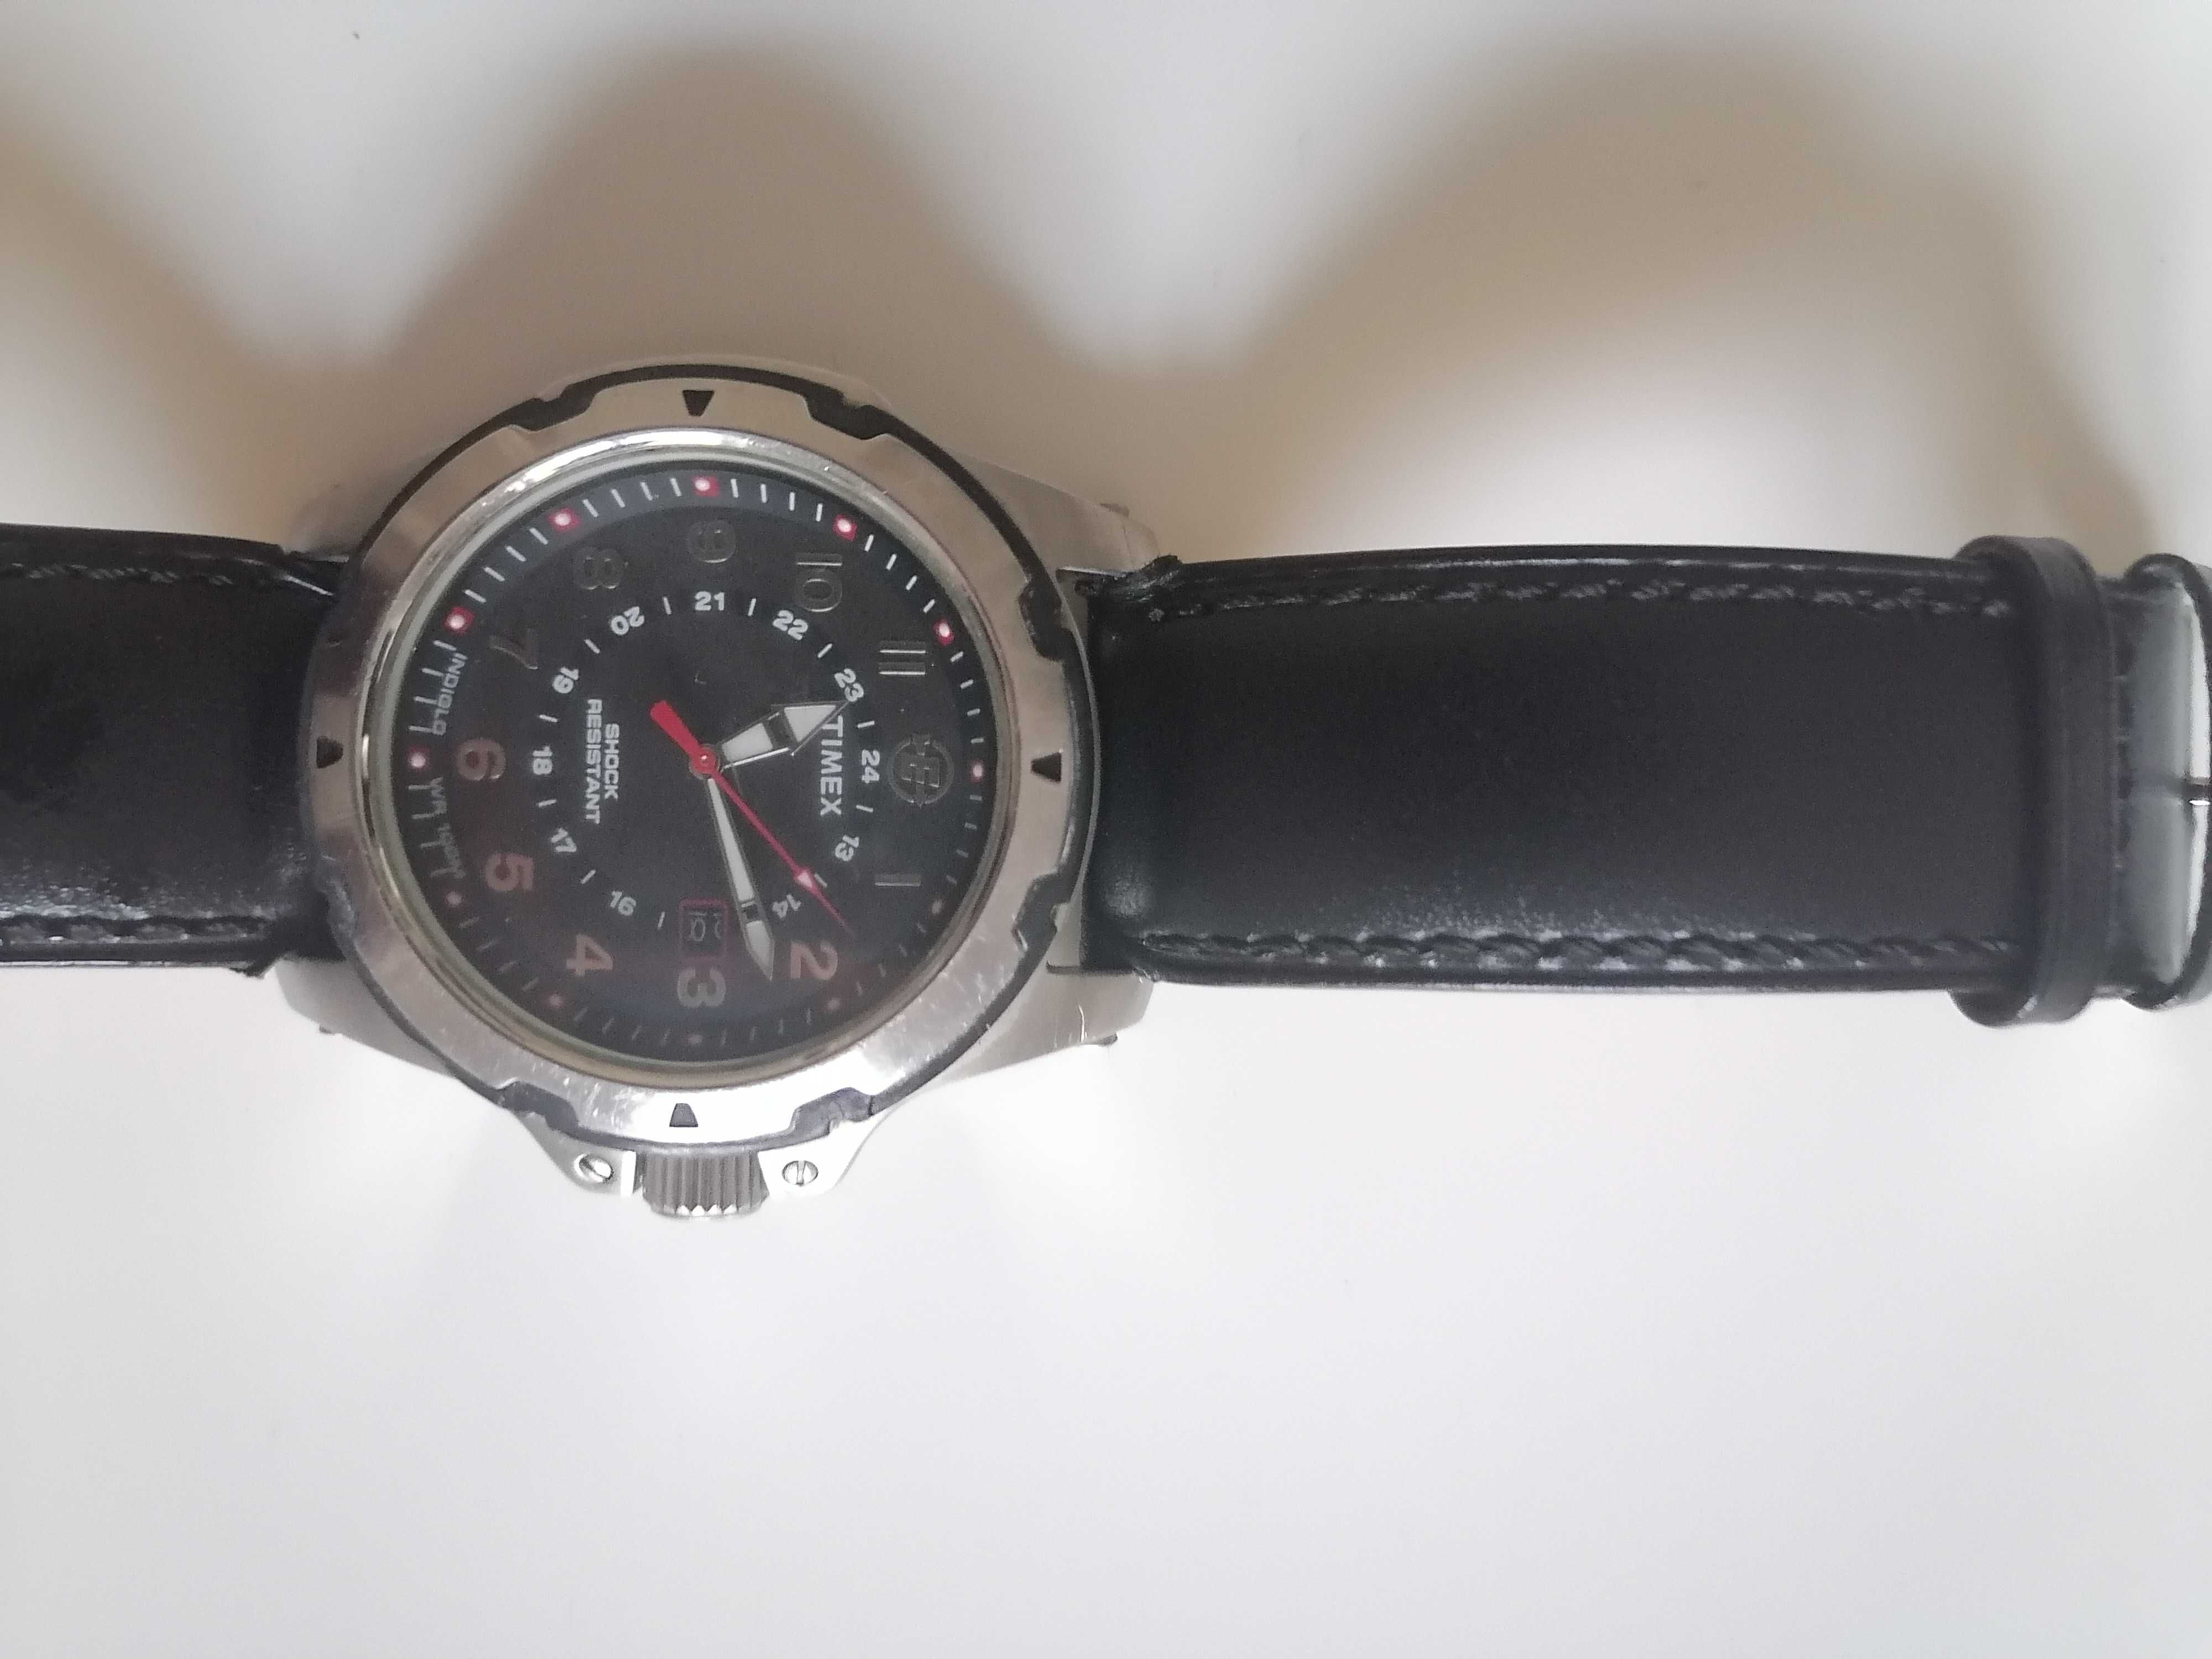 Relógio Timex 905 wr100m